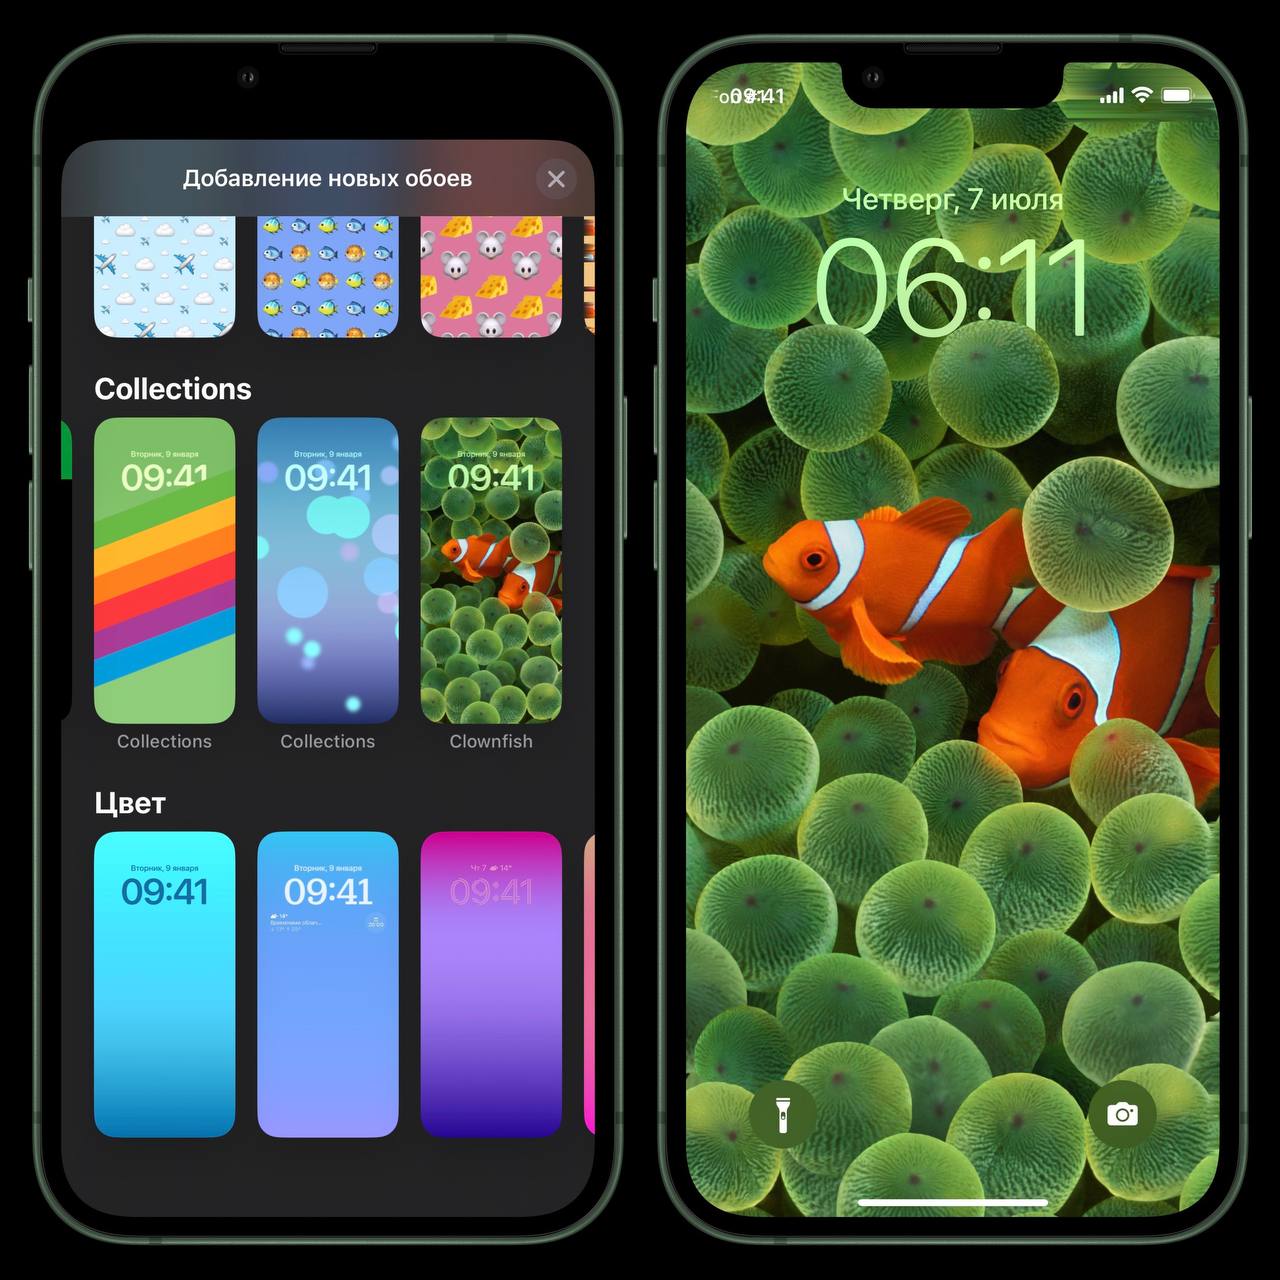 Обои доступны в Галерее Обоев всем обладателям устройств с iOS 16 beta 3 